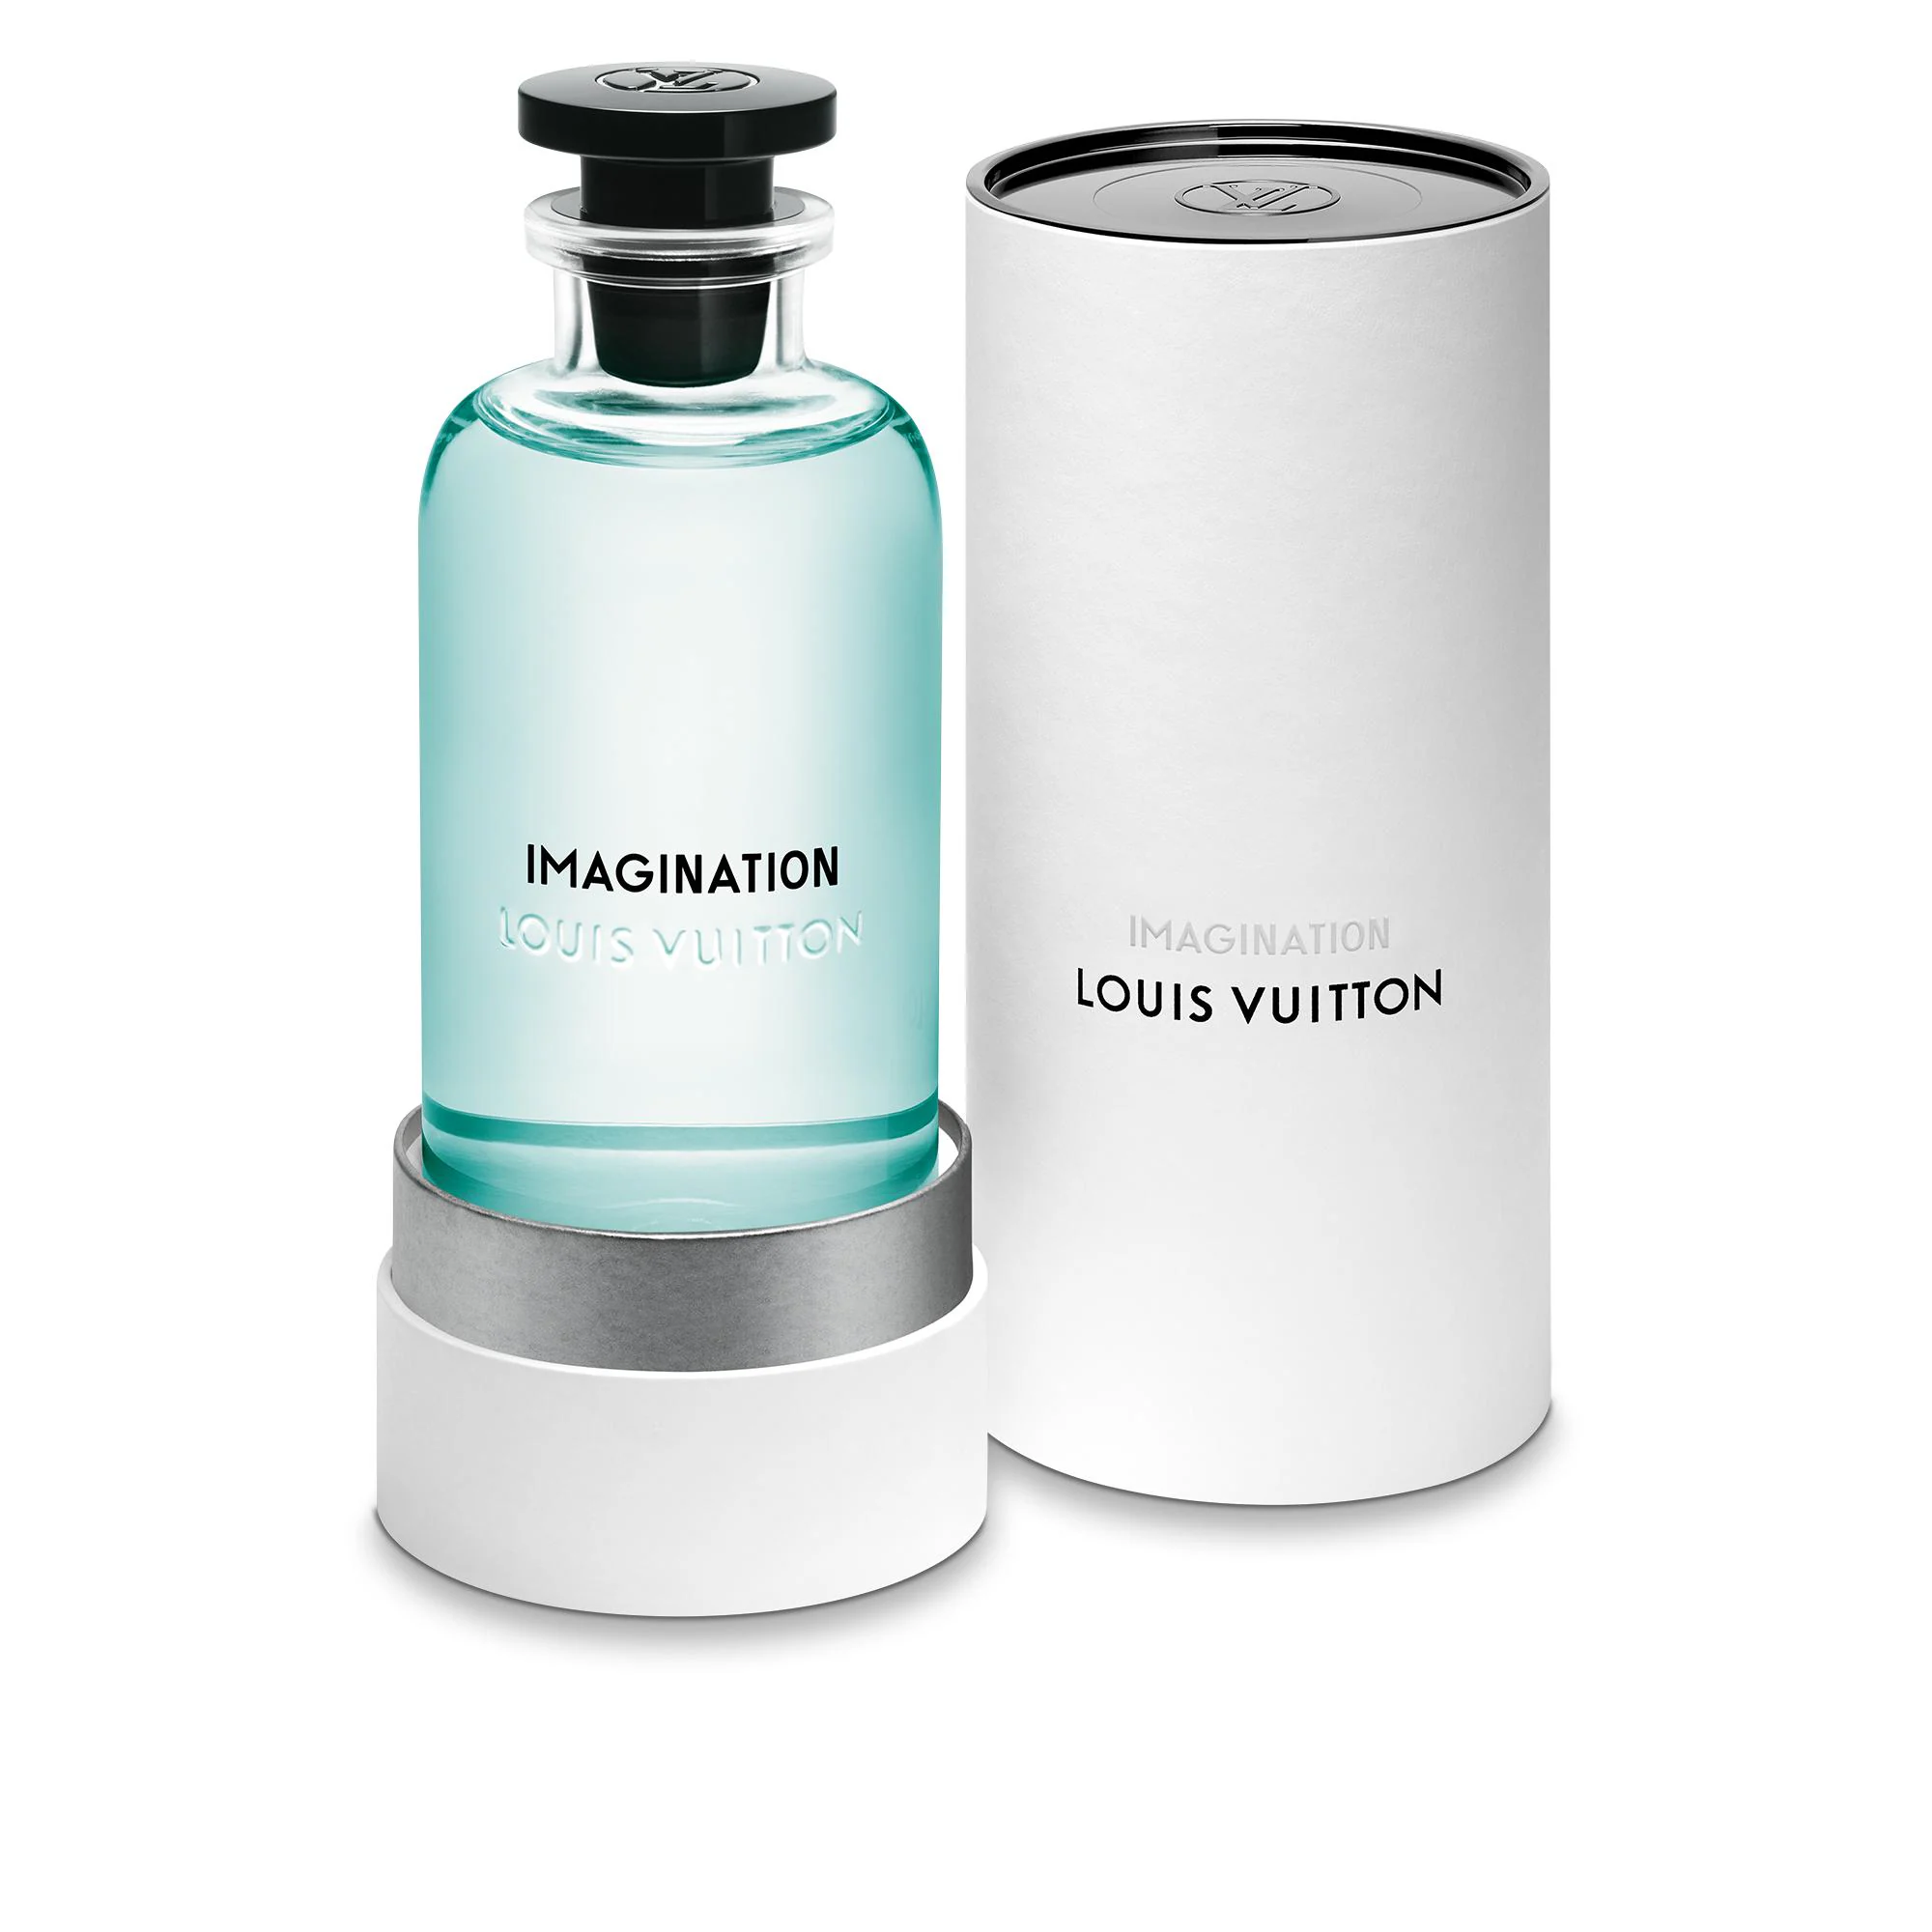 Apa de parfum,Imagination Louis Vuitton,unisex,100ml